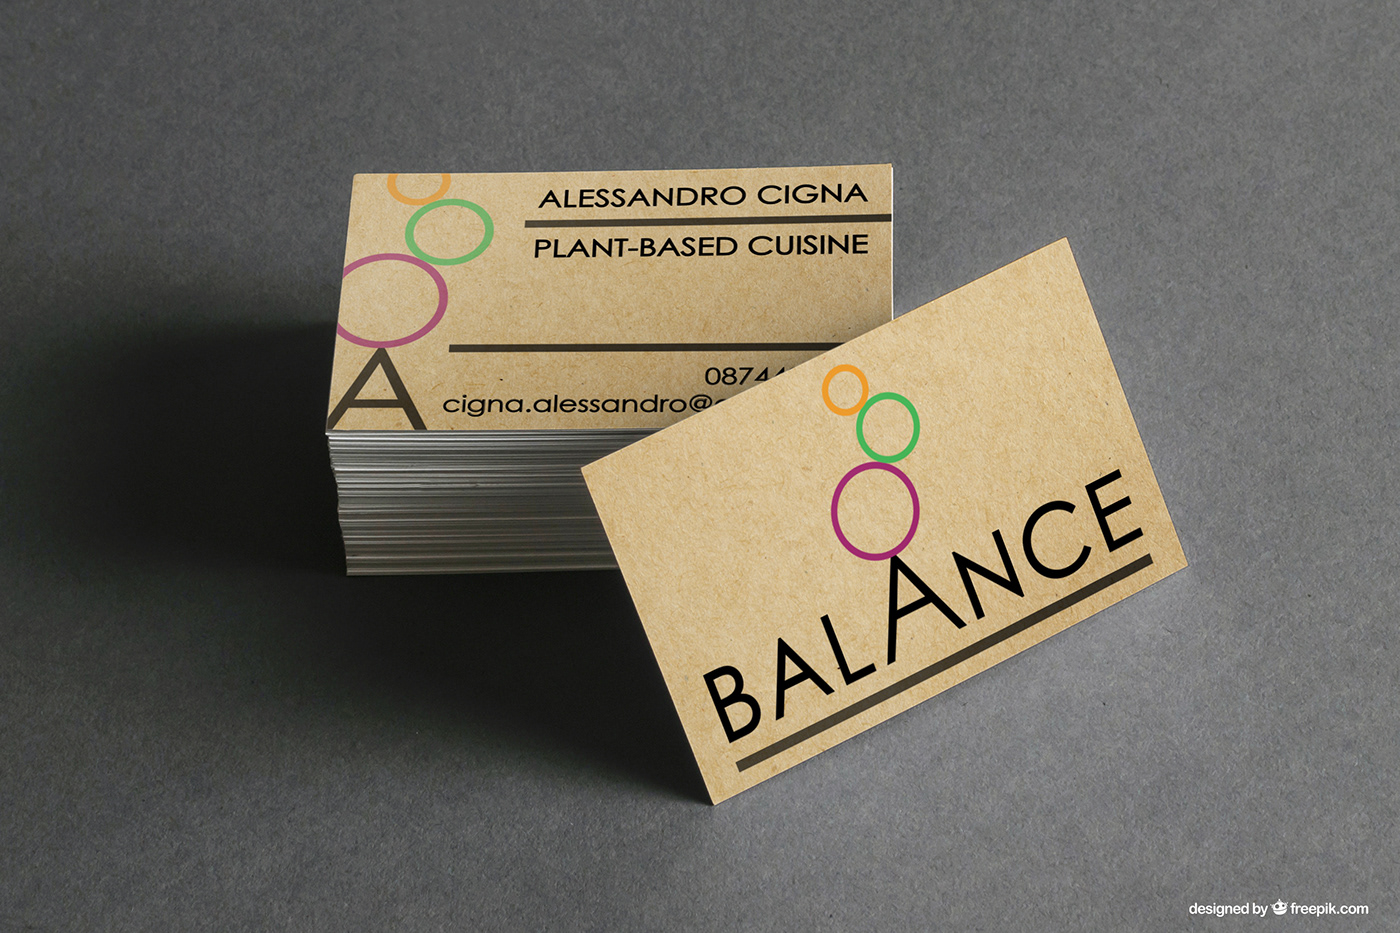 branding  Business Cards logo minimalistic Plant-Based stone balancing Sustainable vegan